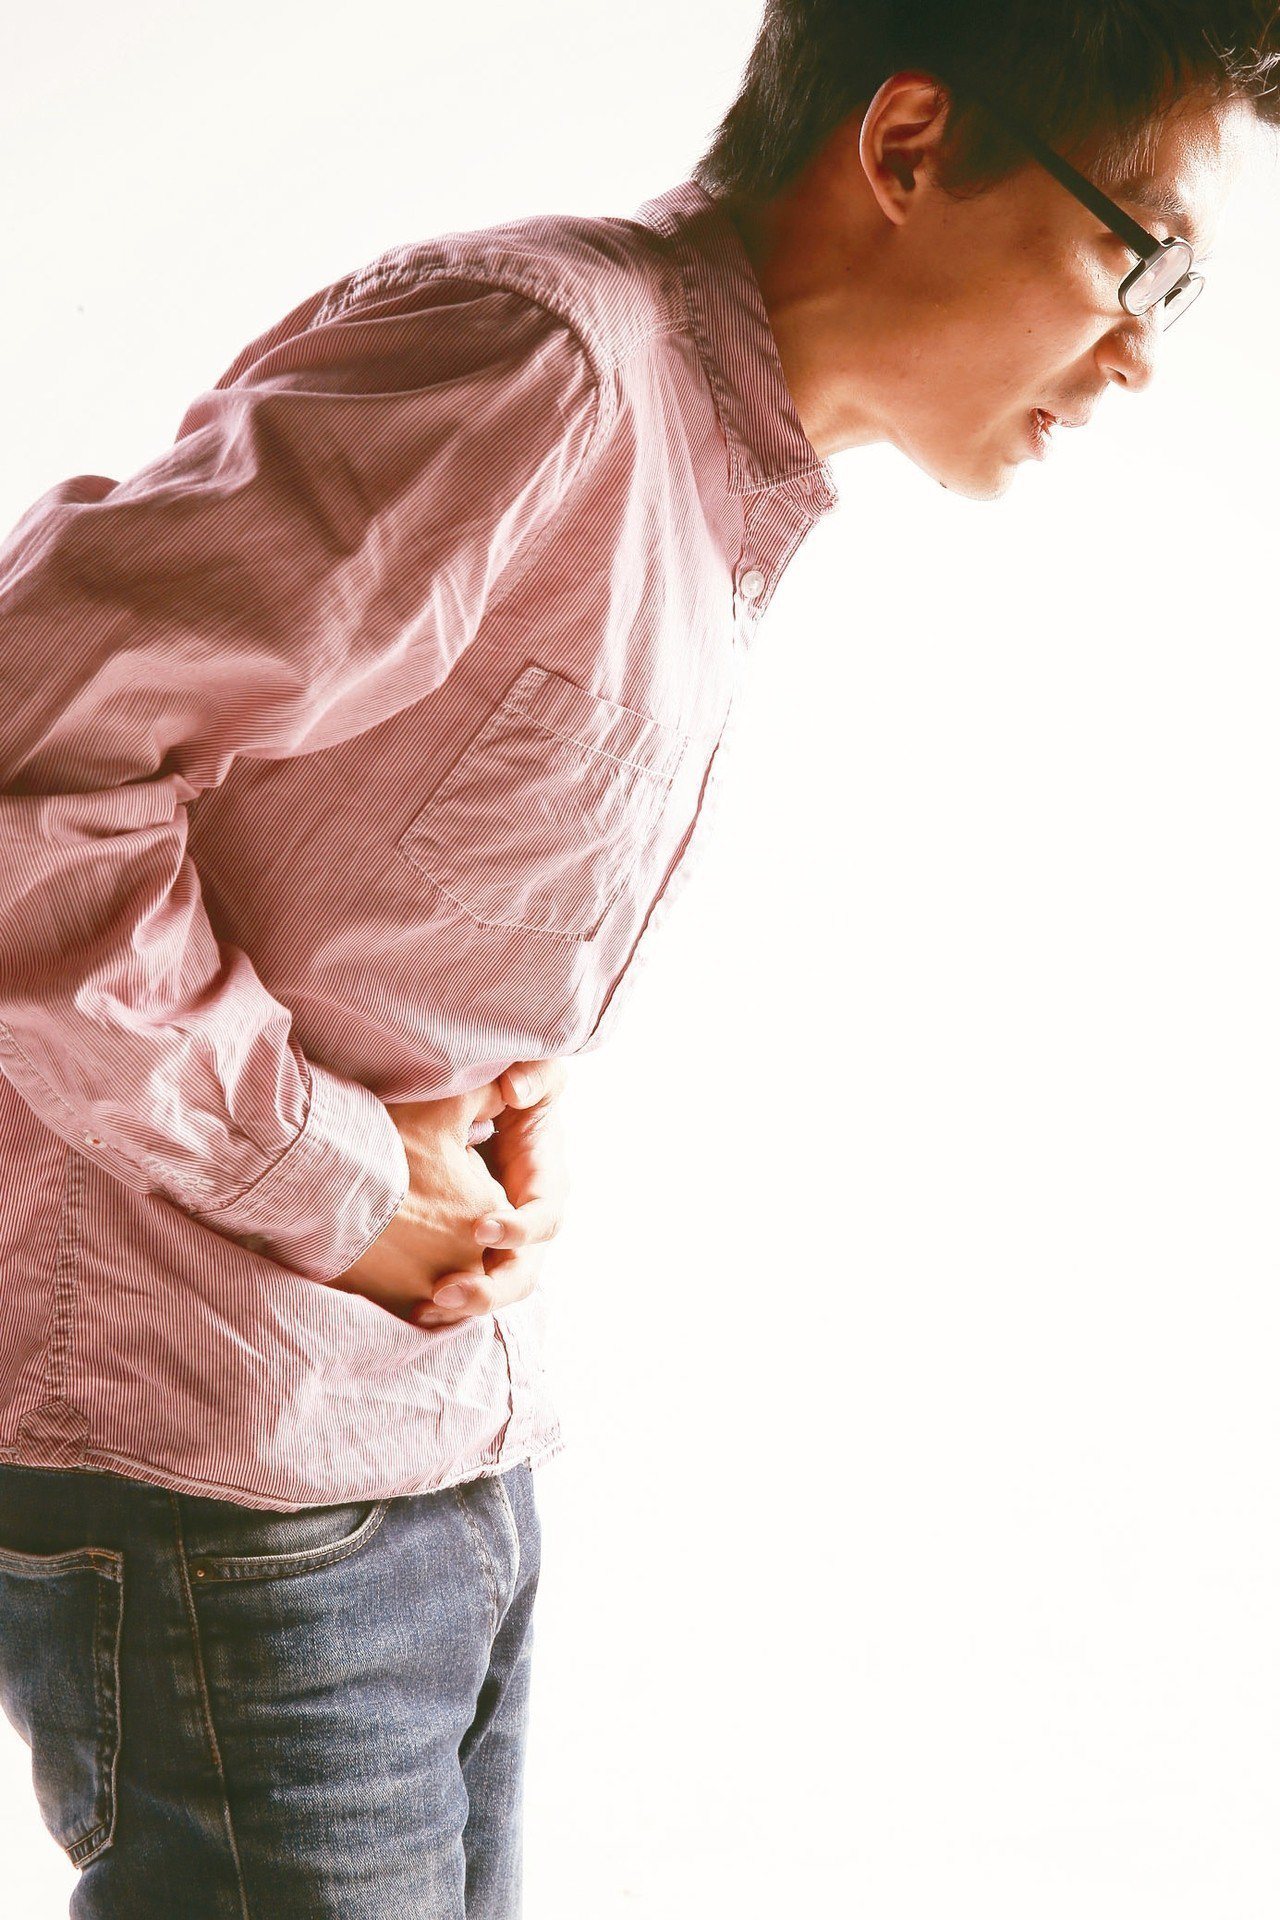 據統計，發炎性腸道疾病患者15年來人數暴增26倍。